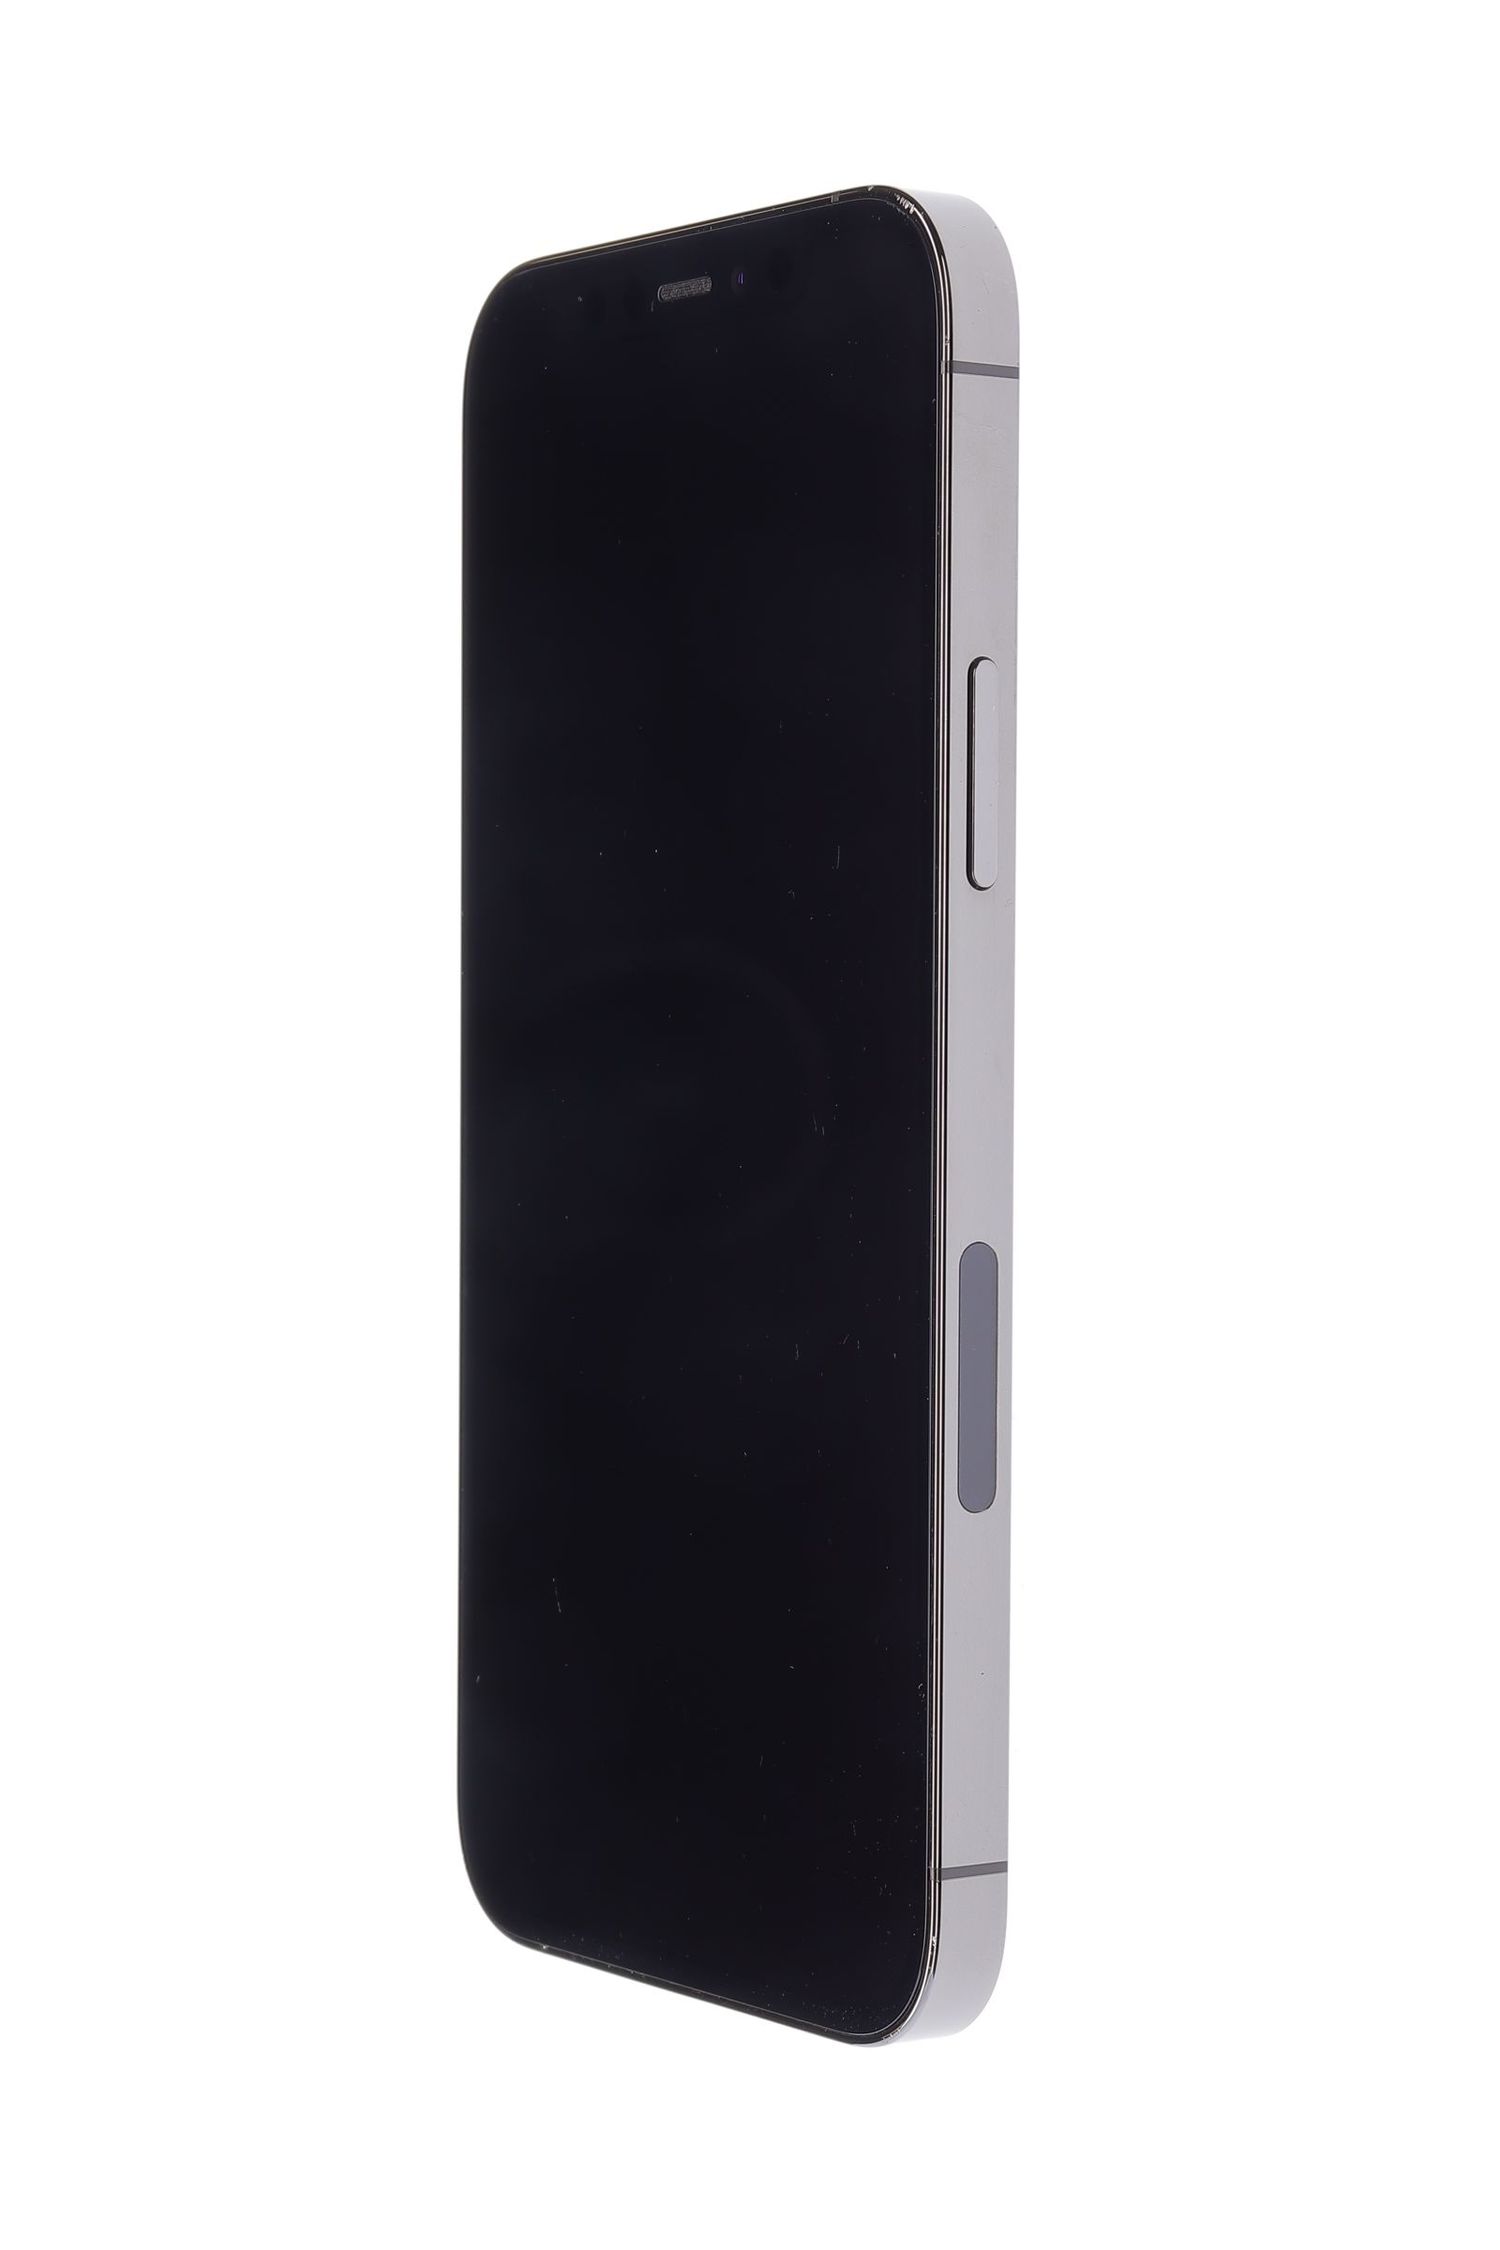 Κινητό τηλέφωνο Apple iPhone 12 Pro, Graphite, 128 GB, Foarte Bun